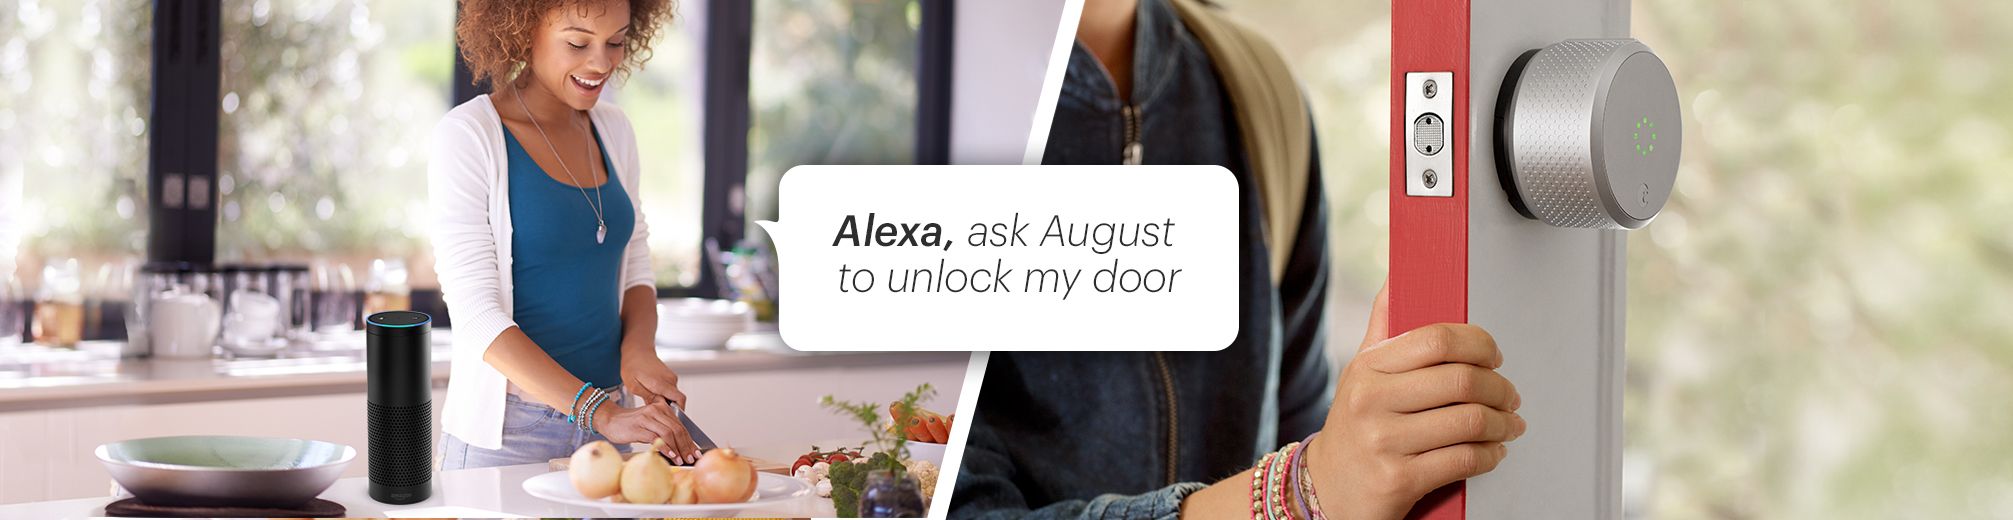 First to Let Amazon Alexa Unlock My Door